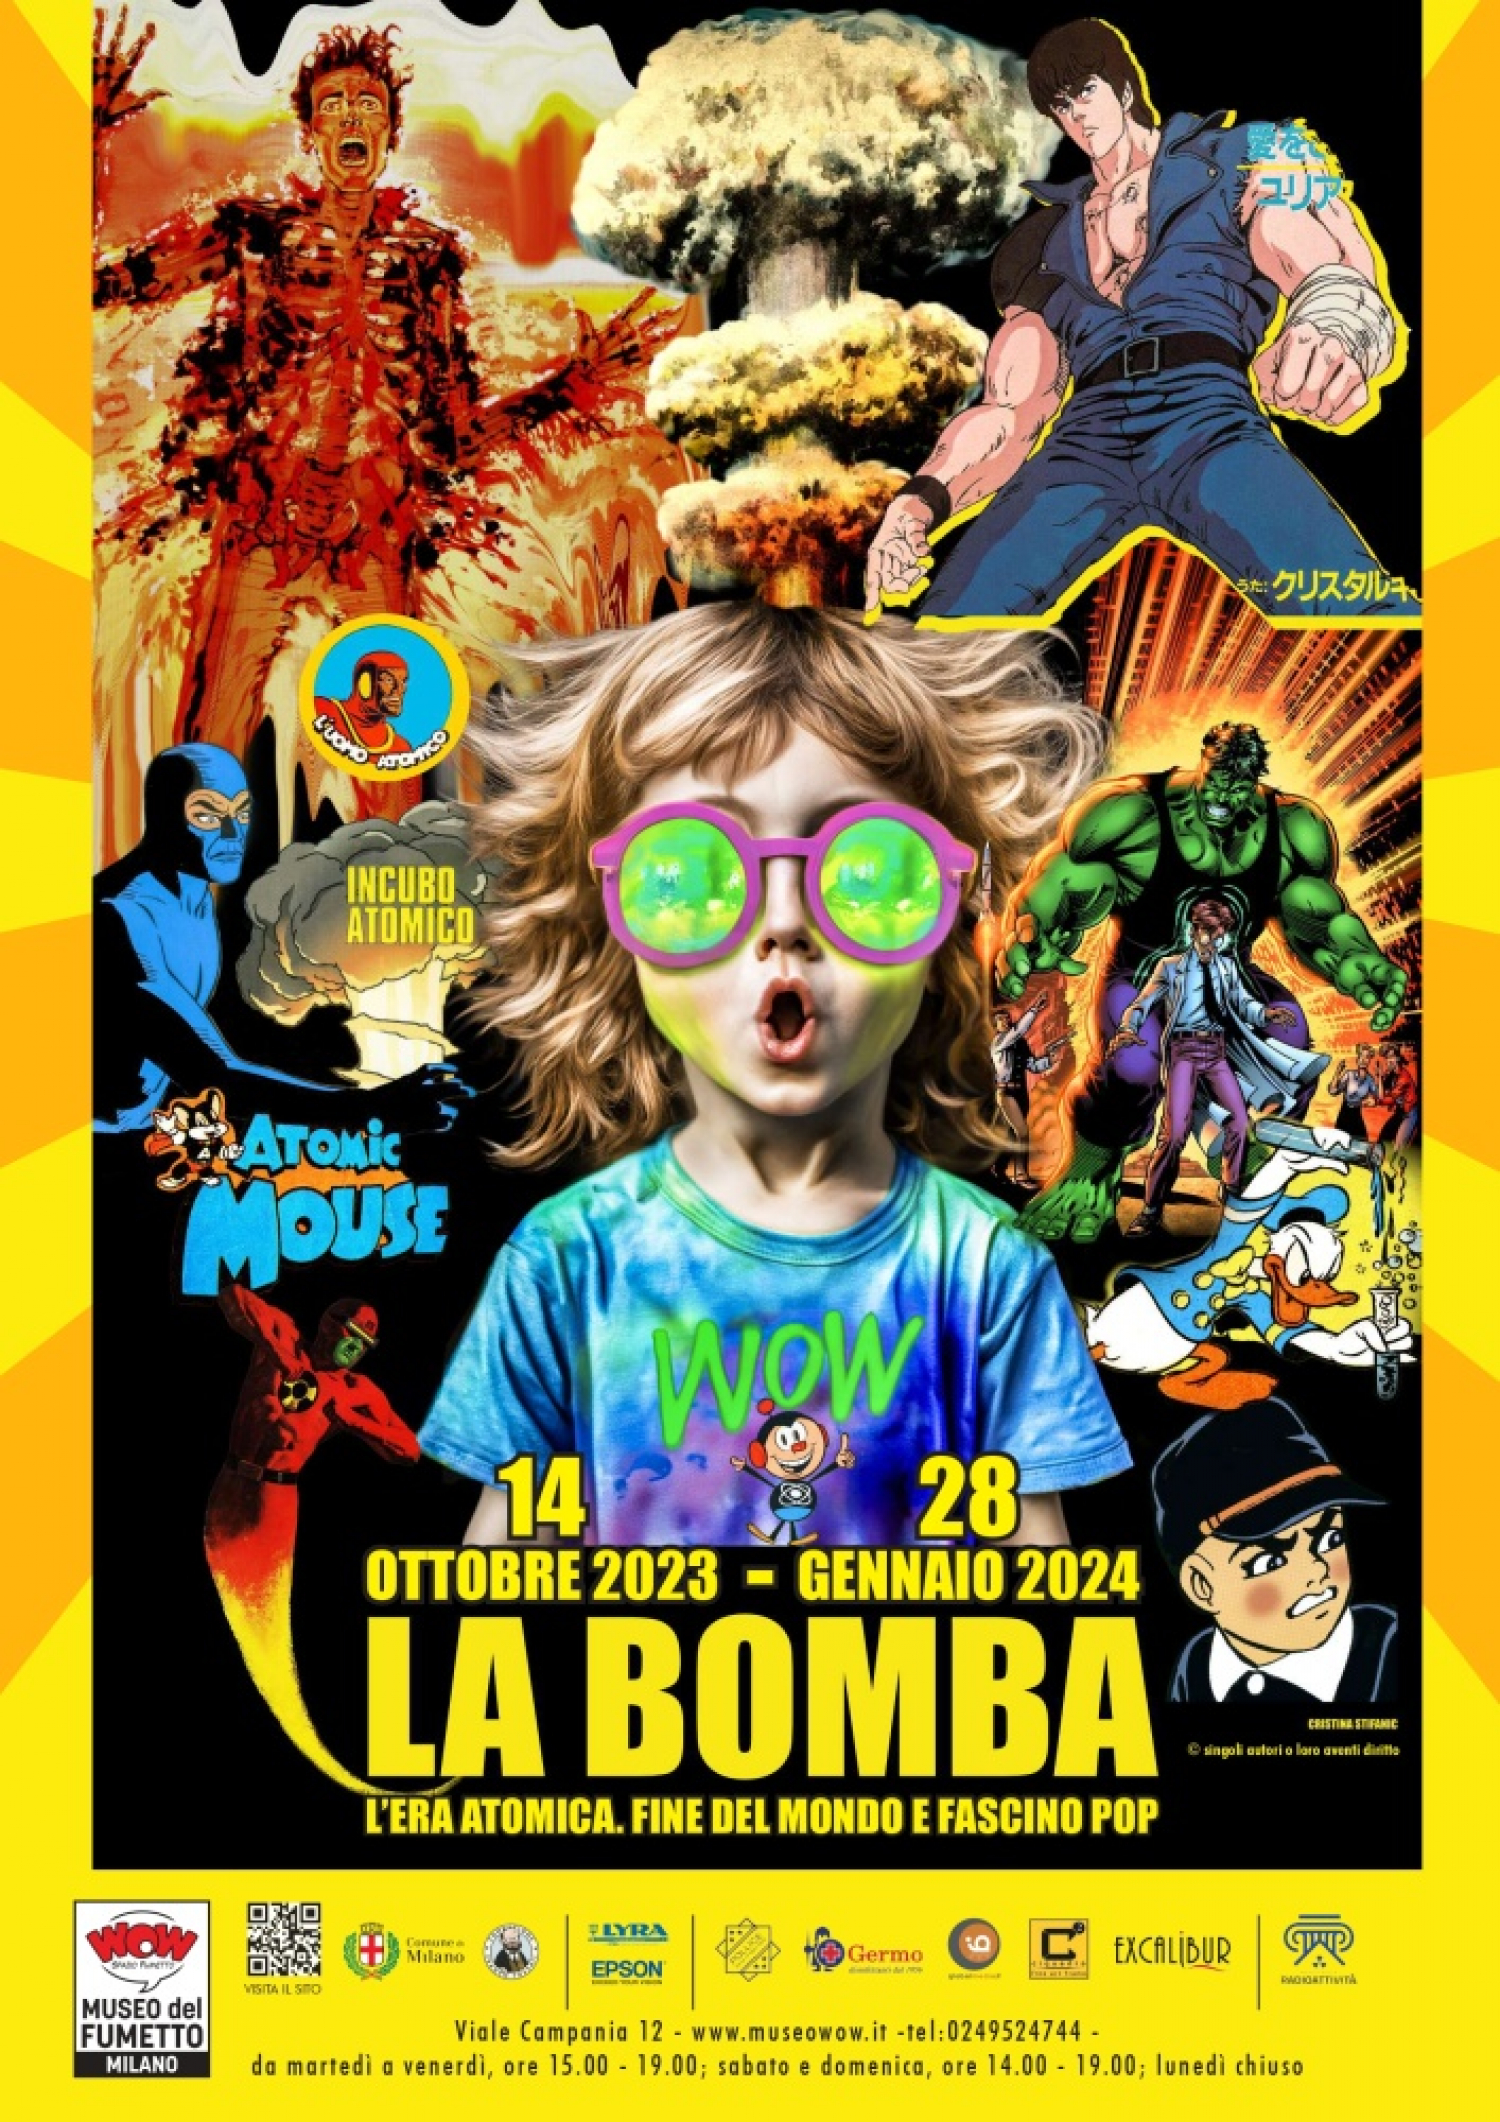 WOW Spazio Fumetto ospita la mostra “La bomba. L’era atomica, fine del mondo e fascino pop”